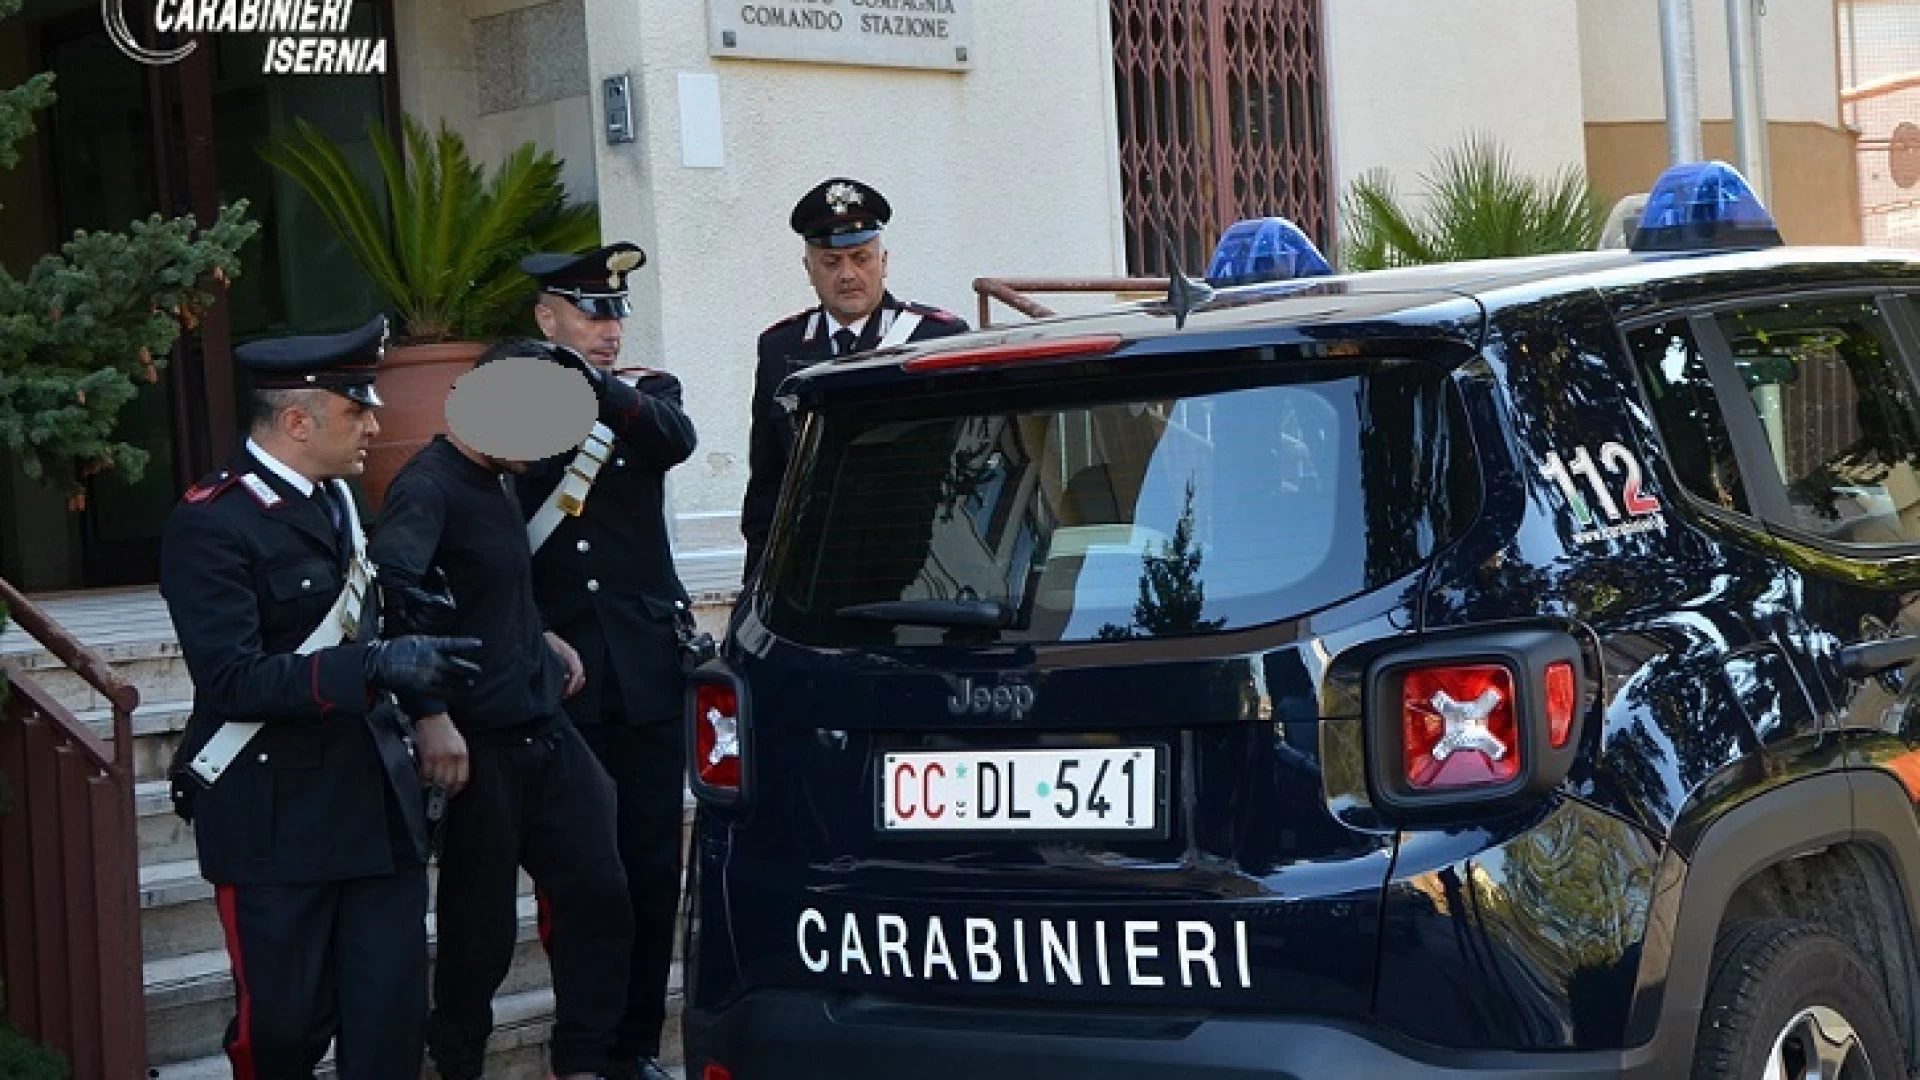 Lite in un Bar. I Carabinieri arrestano uno straniero per resistenza a Pubblico Ufficiale, mentre un altro connazionale viene denunciato per lesioni.